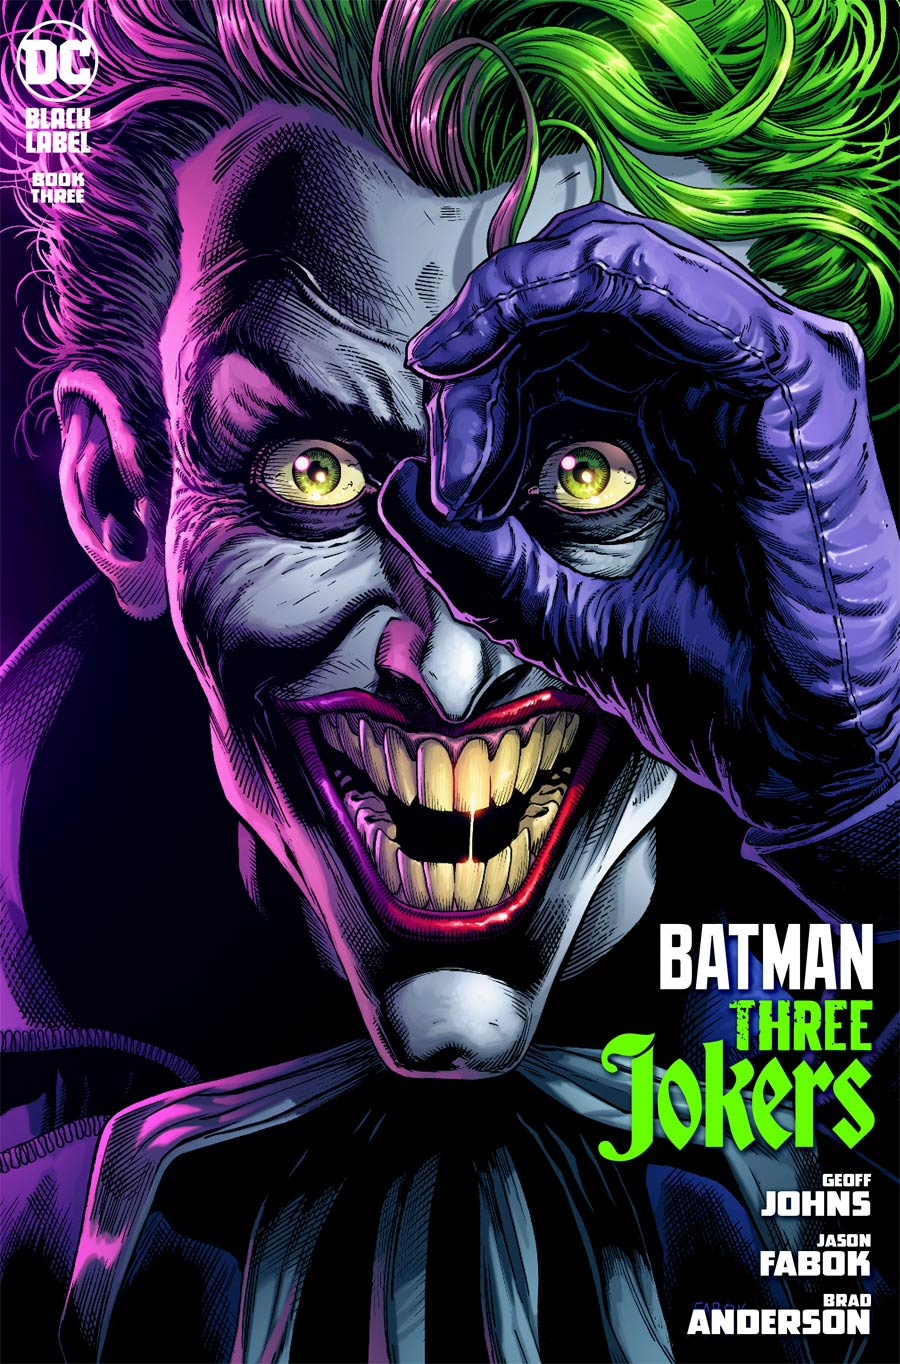 BATMAN THREE JOKERS #3 COVER A JASON FABOK JOKER